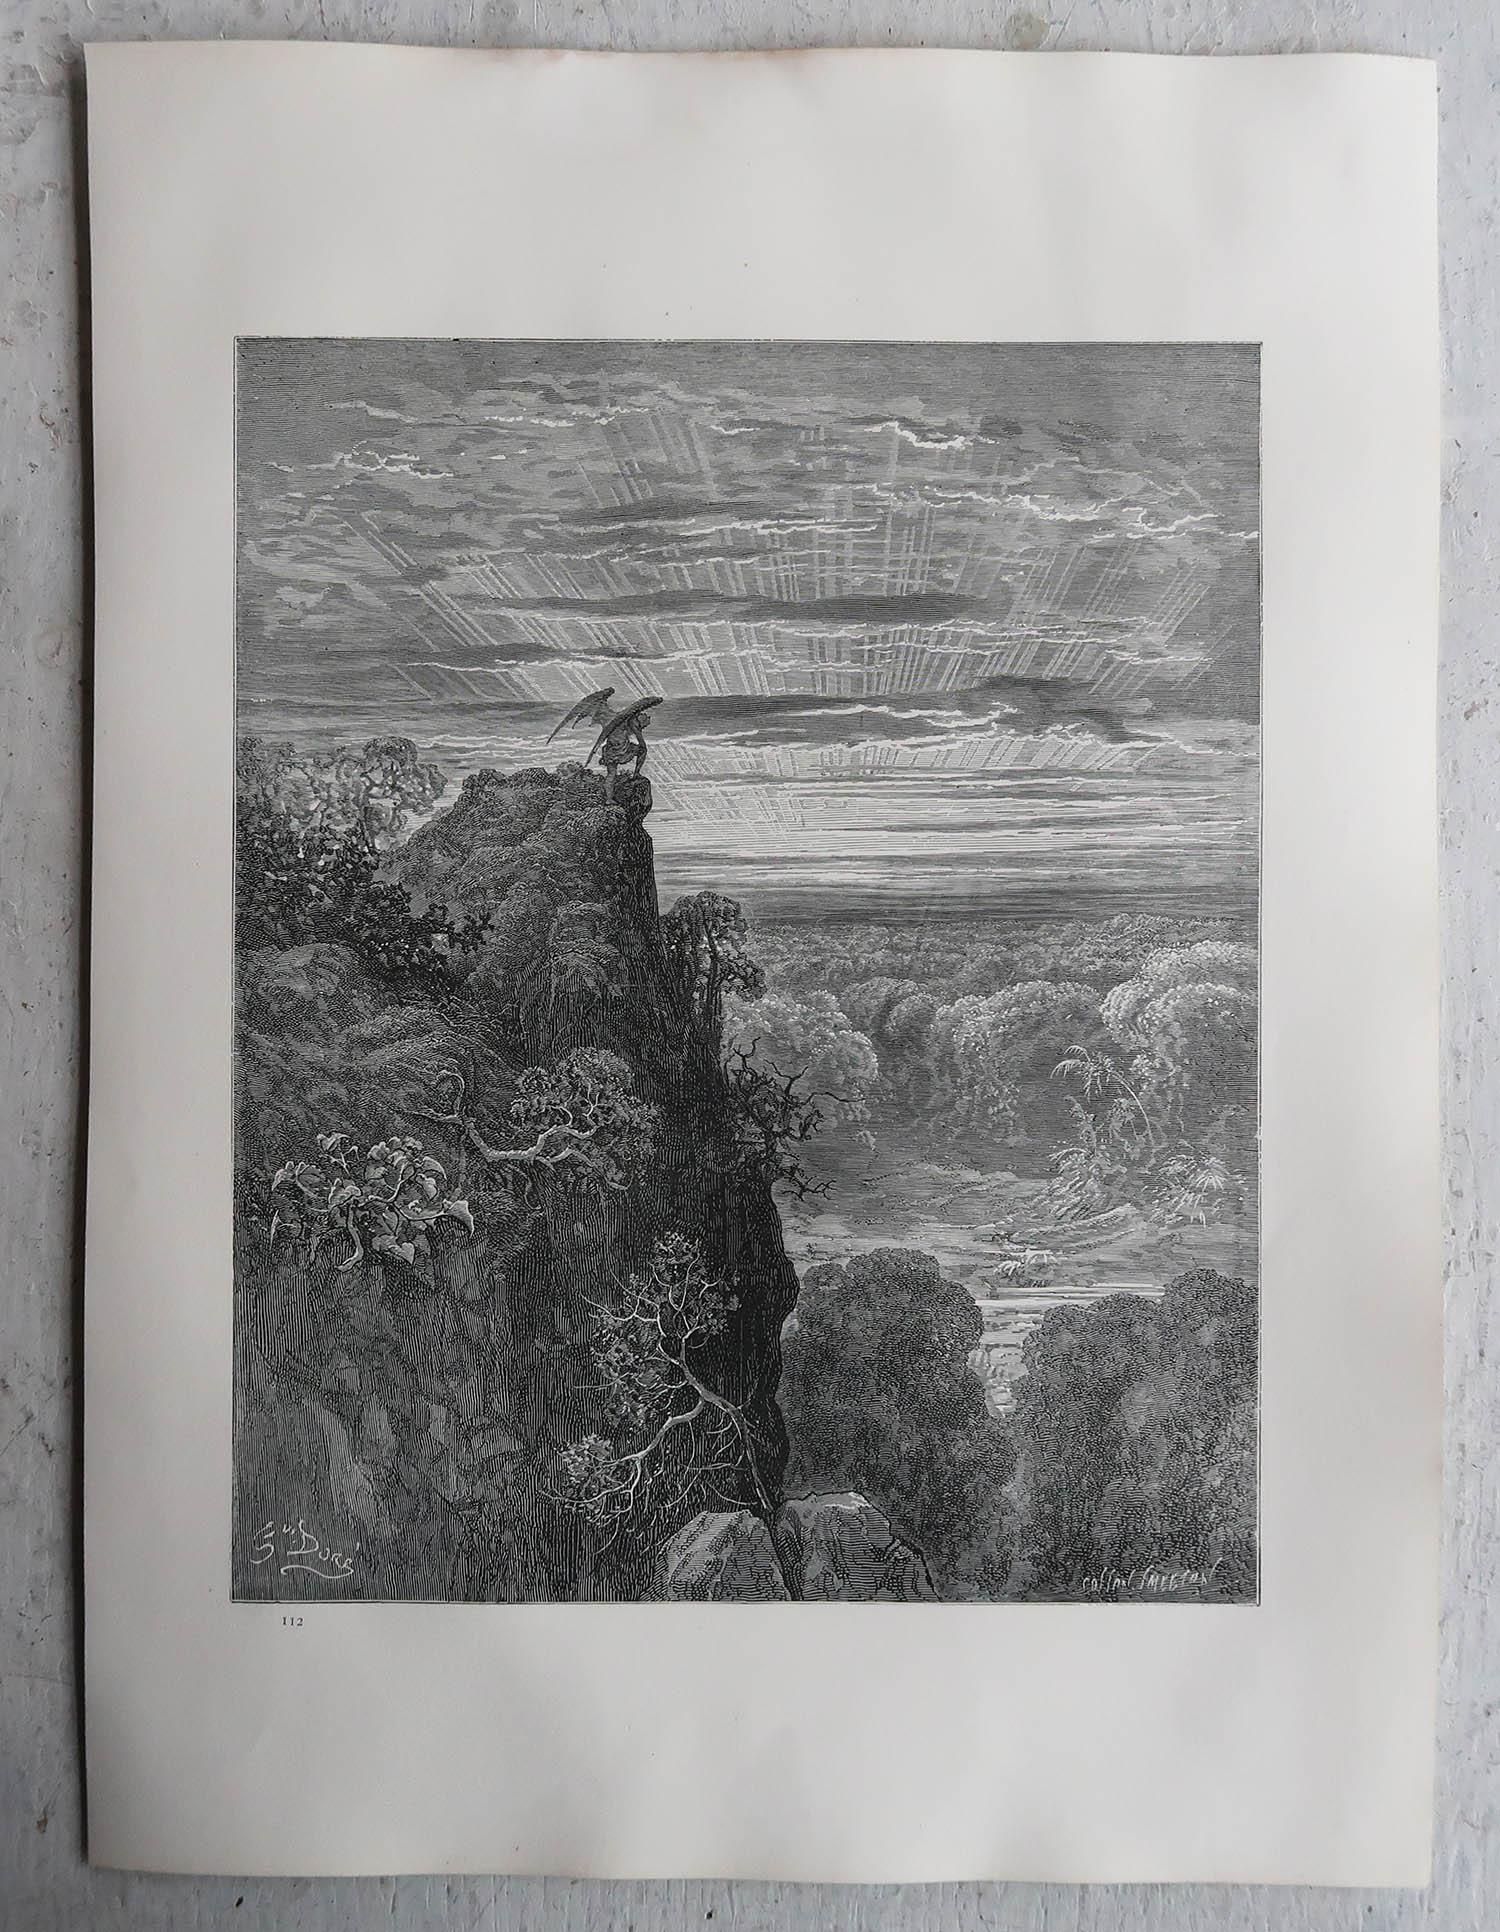 Große Original-Antik-Druck von Gustave Doré aus Miltons 